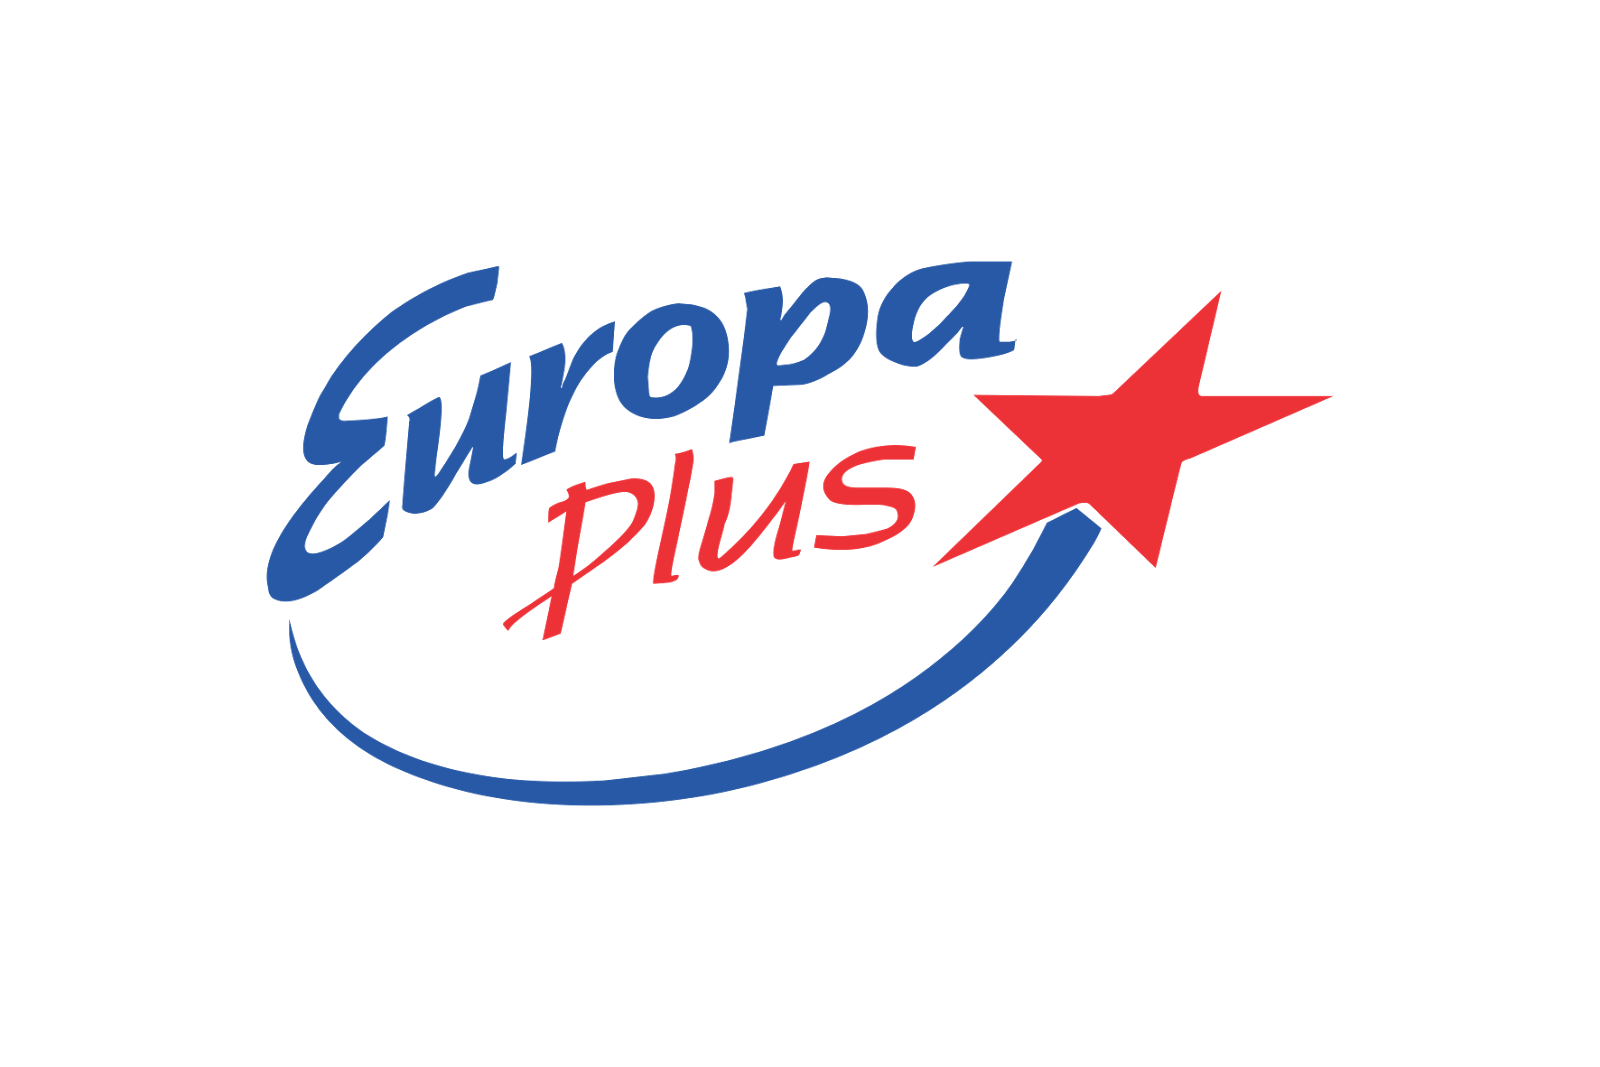 Фм радио европа плюс. Европа плюс. Значок Европа плюс. Логотипы радиостанций. Радио Европа плюс лого.